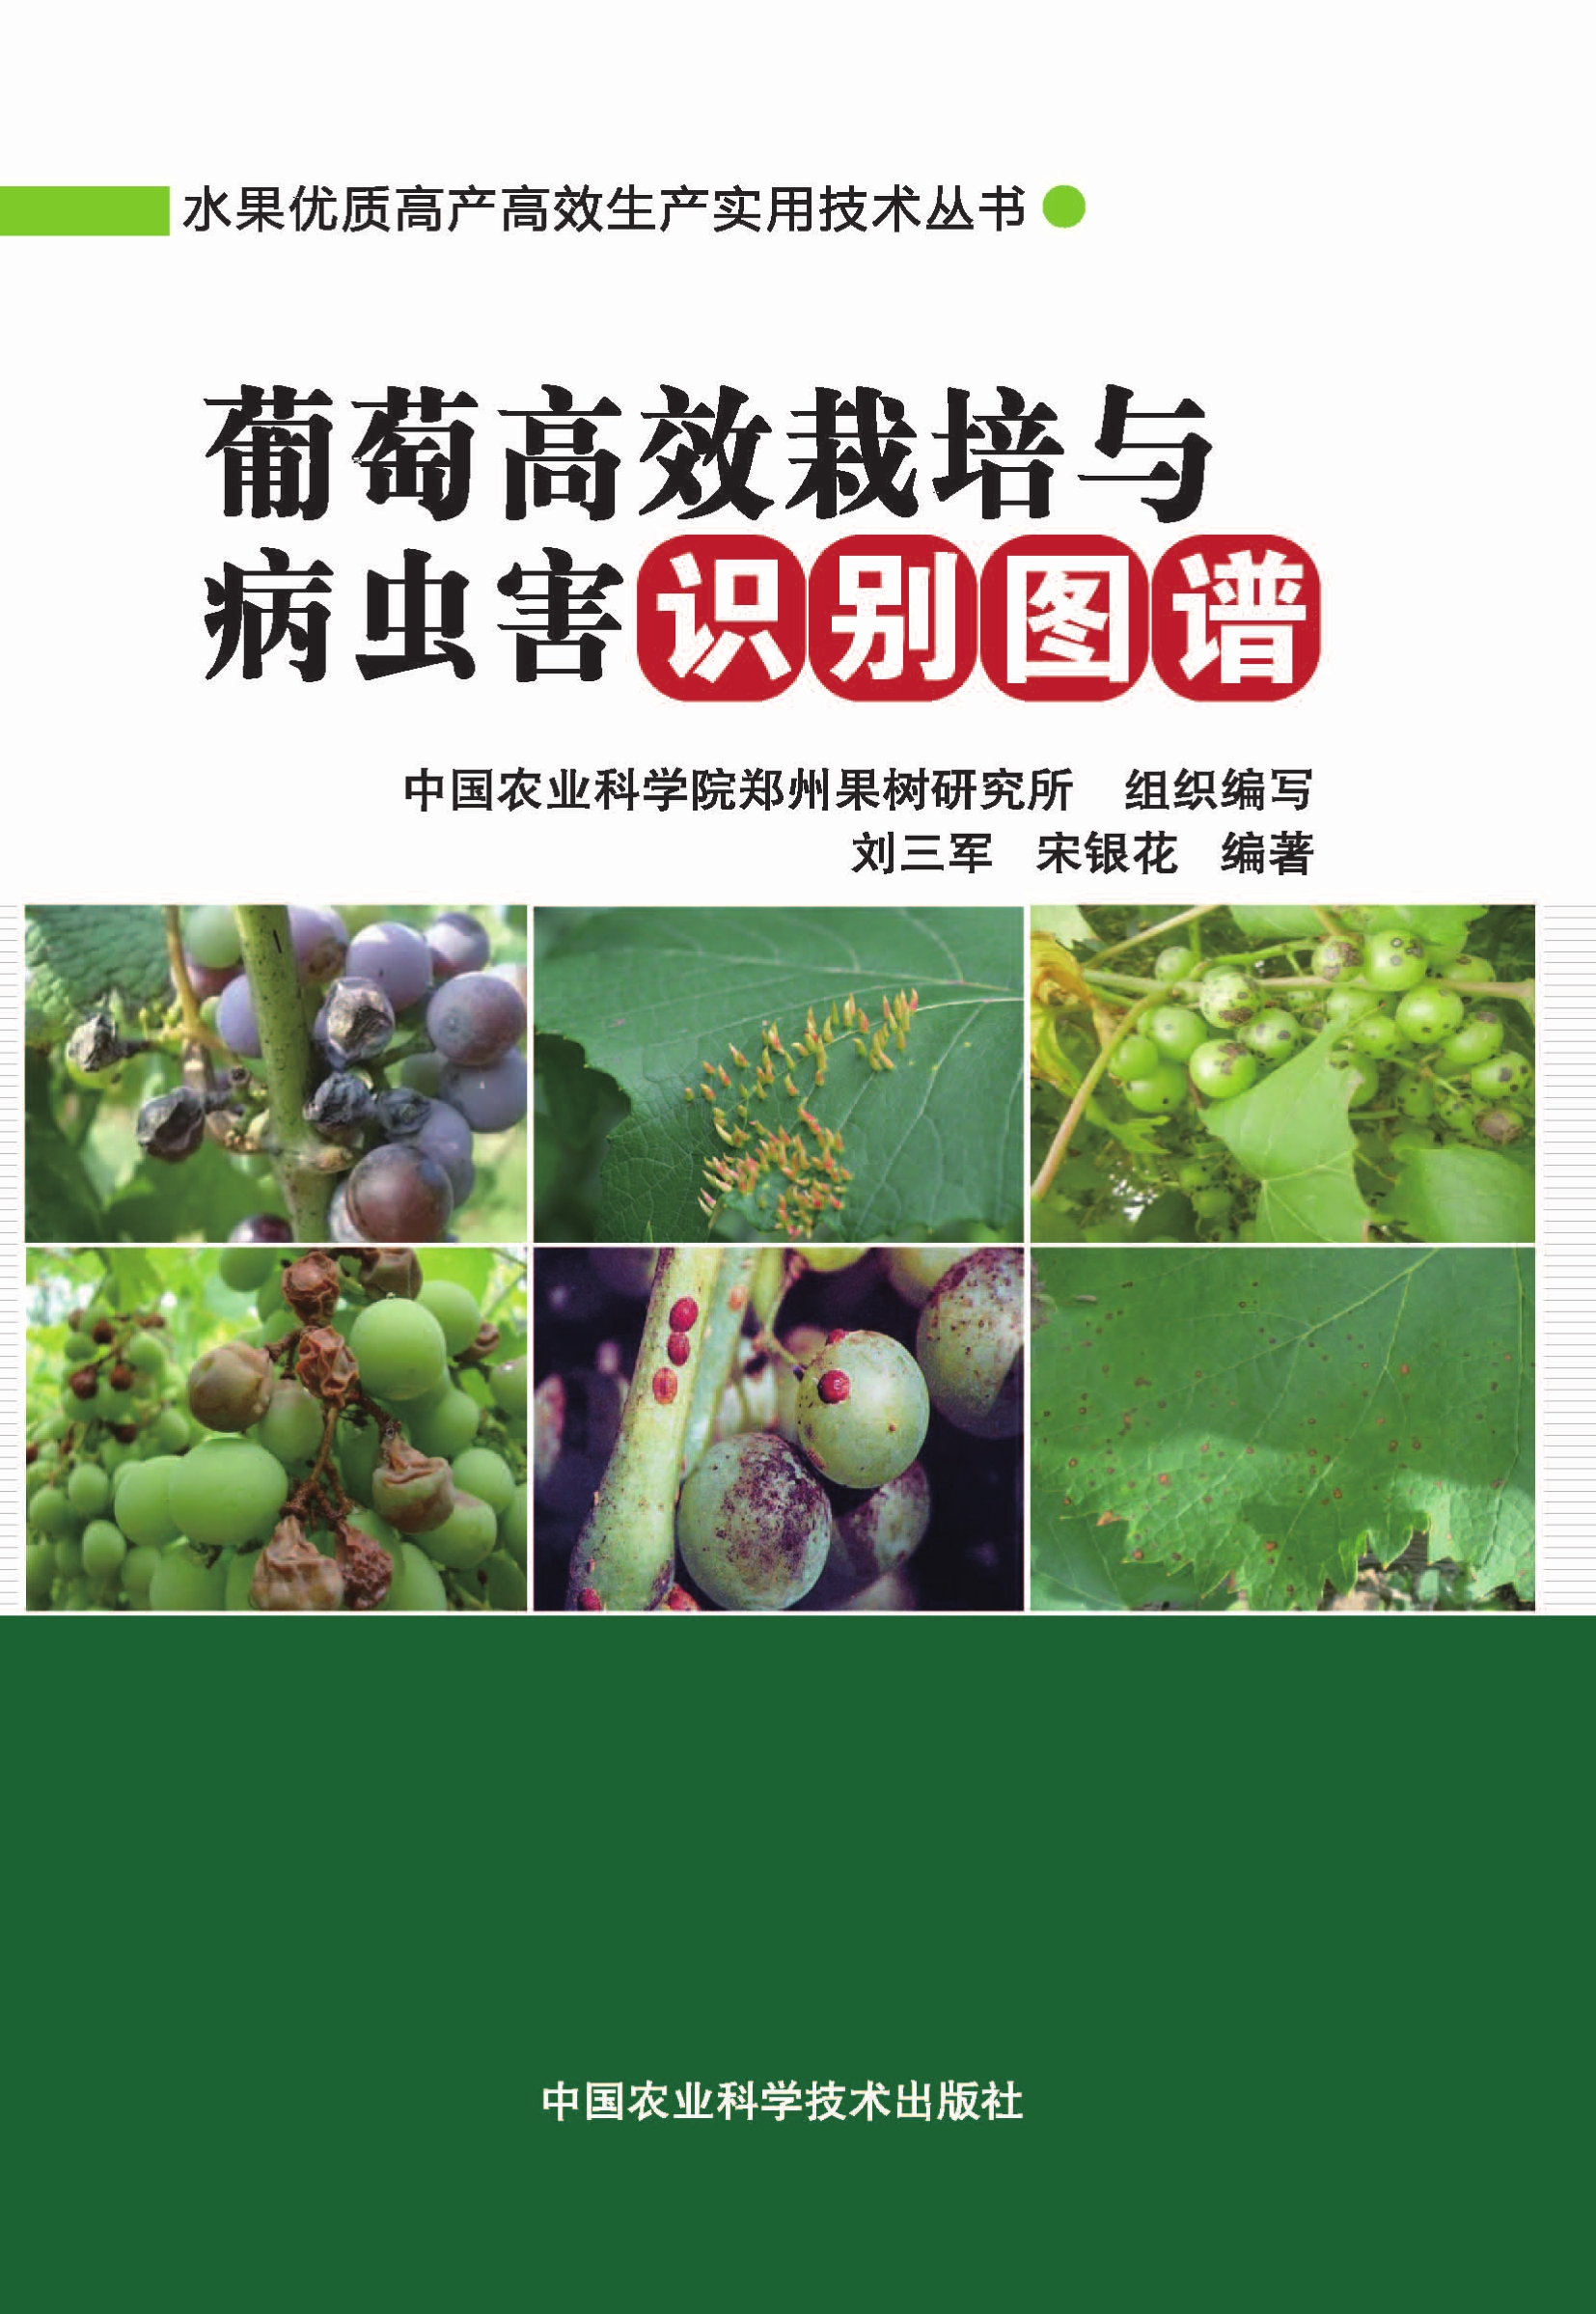 葡萄高效栽培与病虫害识别图谱